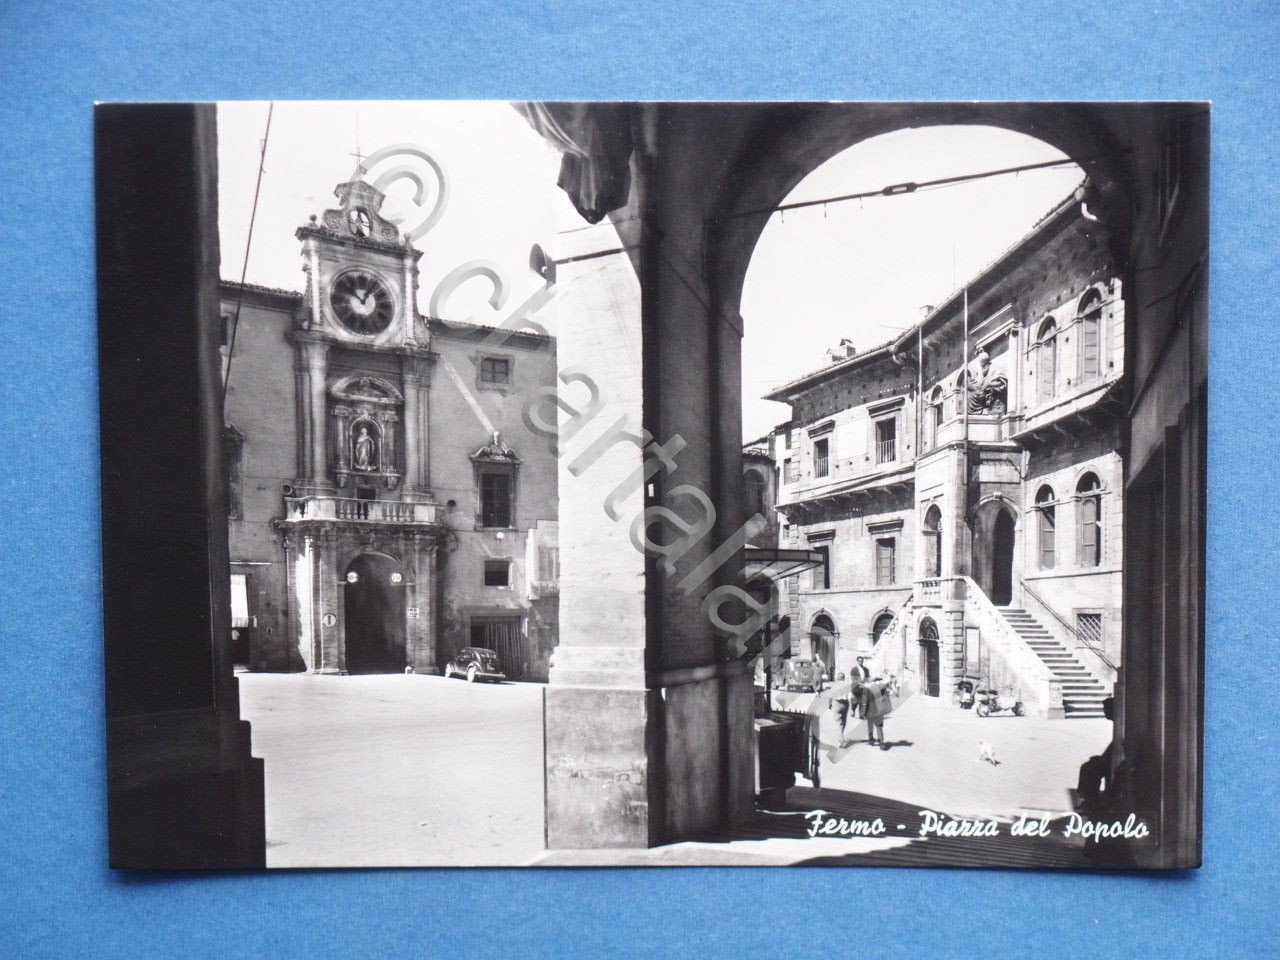 Cartolina Fermo - Piazza del Popolo - 1959.